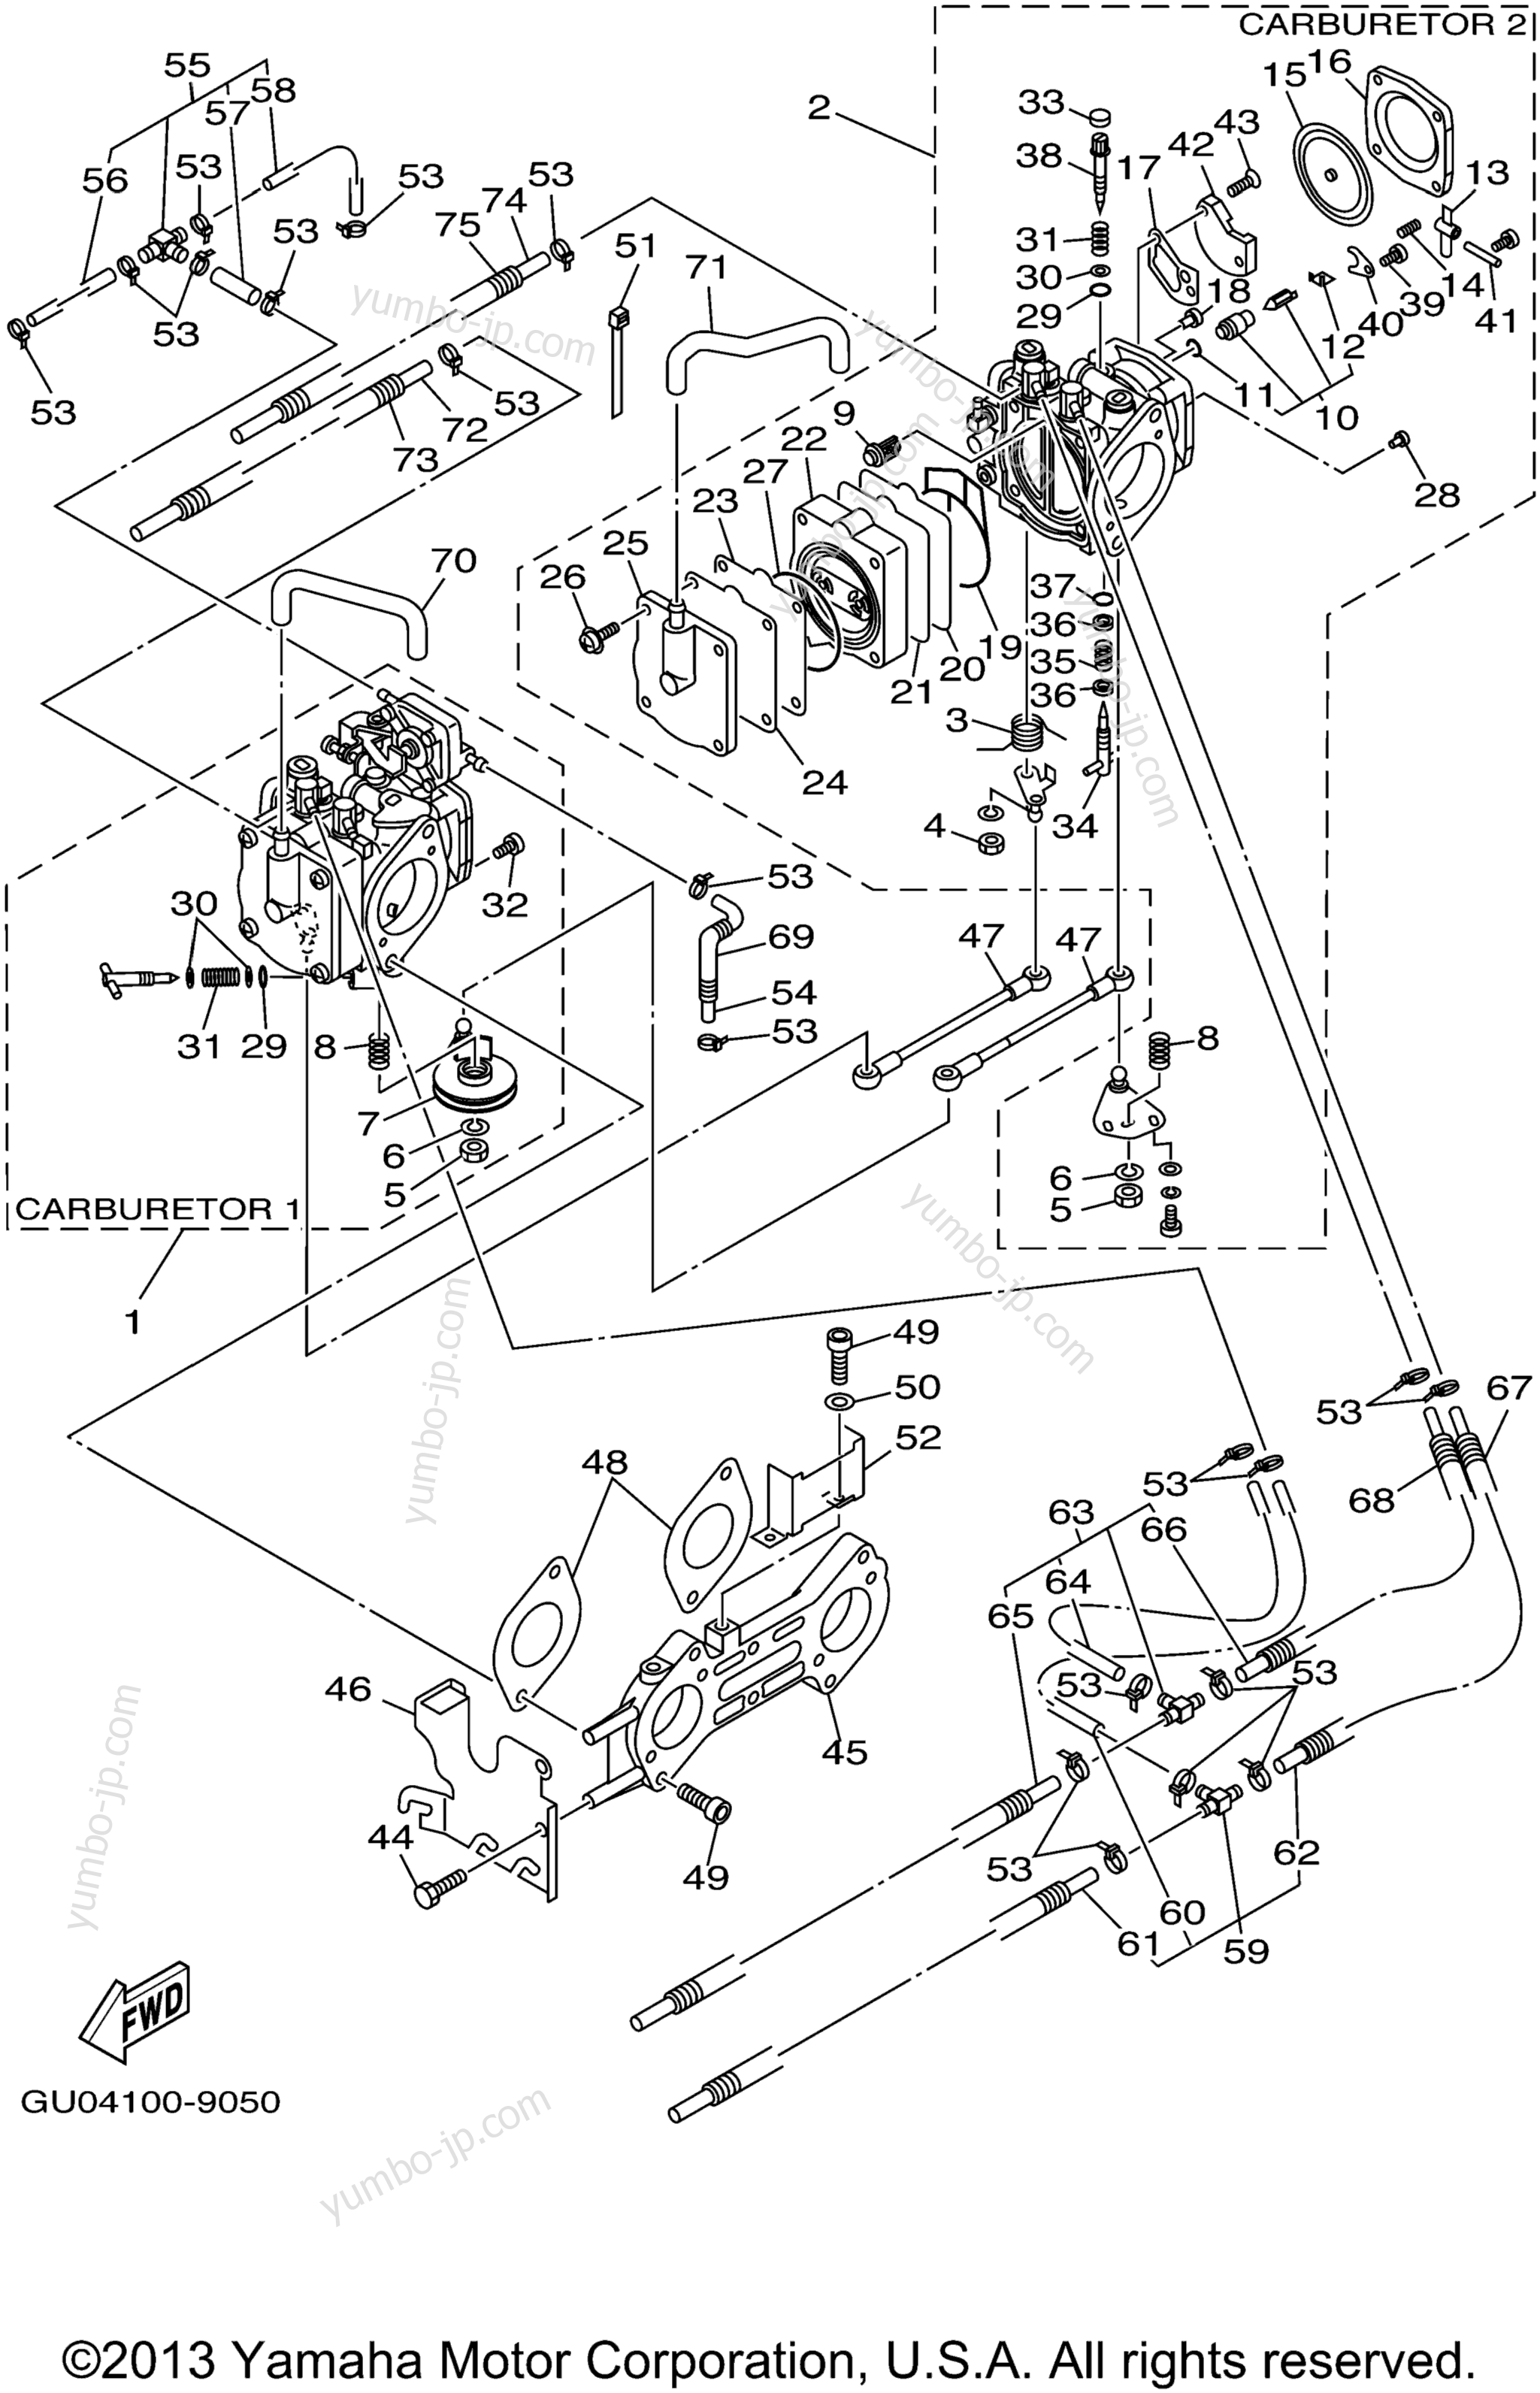 Карбюратор для гидроциклов YAMAHA WAVE RUNNER GP800 (GP800X) 1999 г.